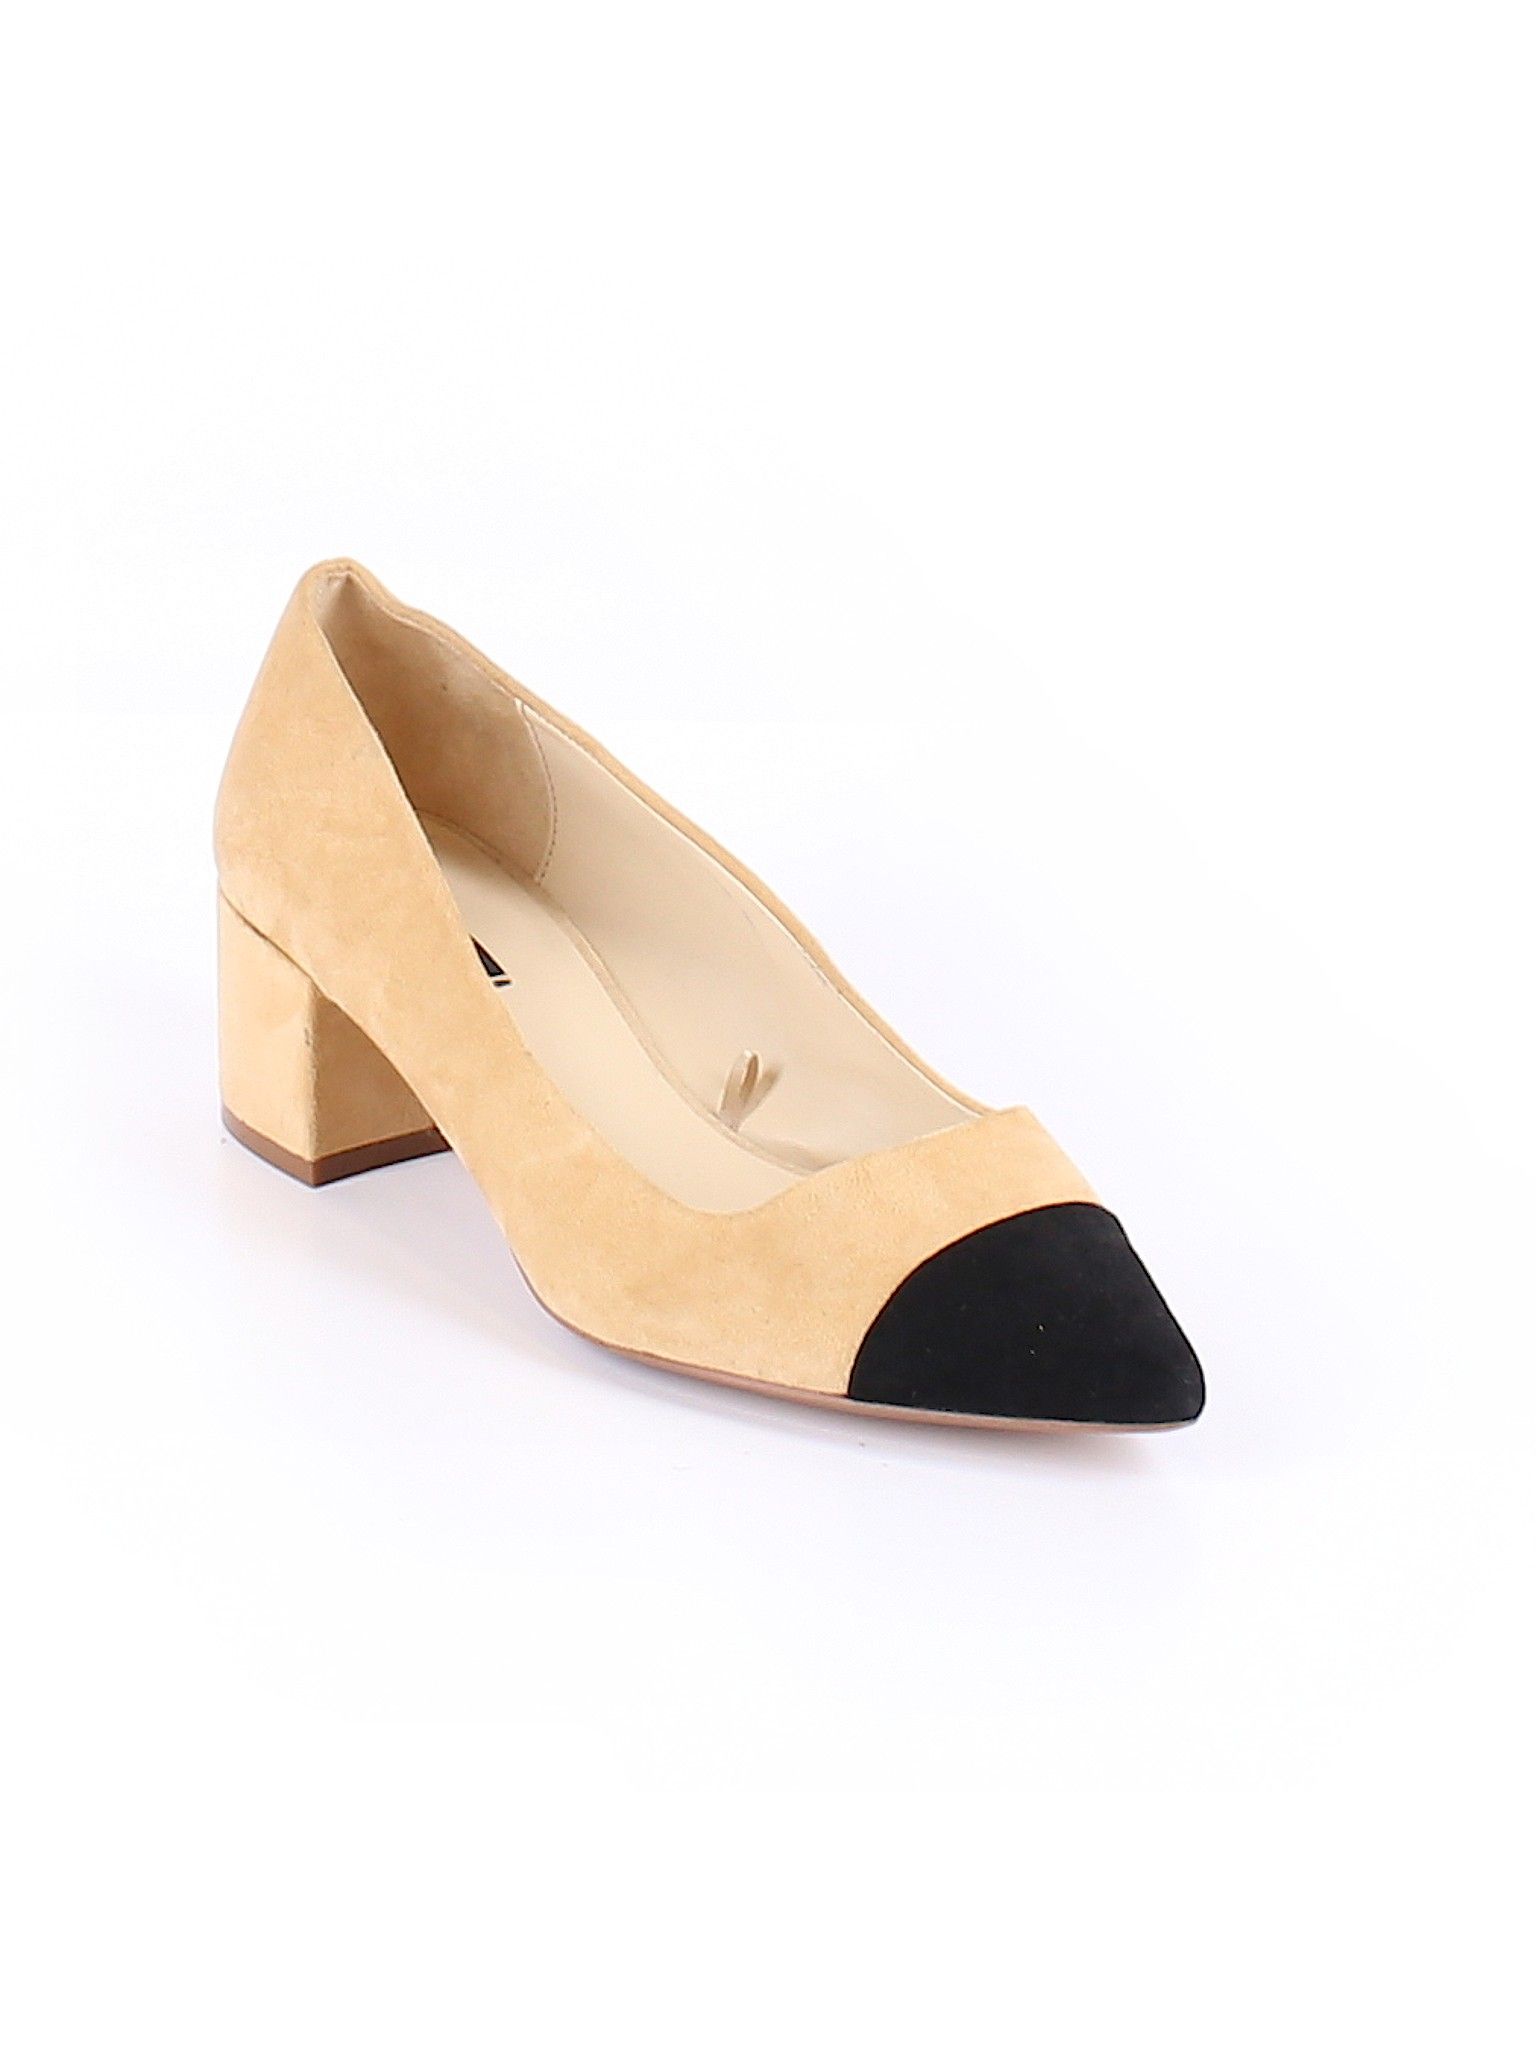 Zara Basic Heels Size 10: Tan Women's Clothing - 45445014 | thredUP